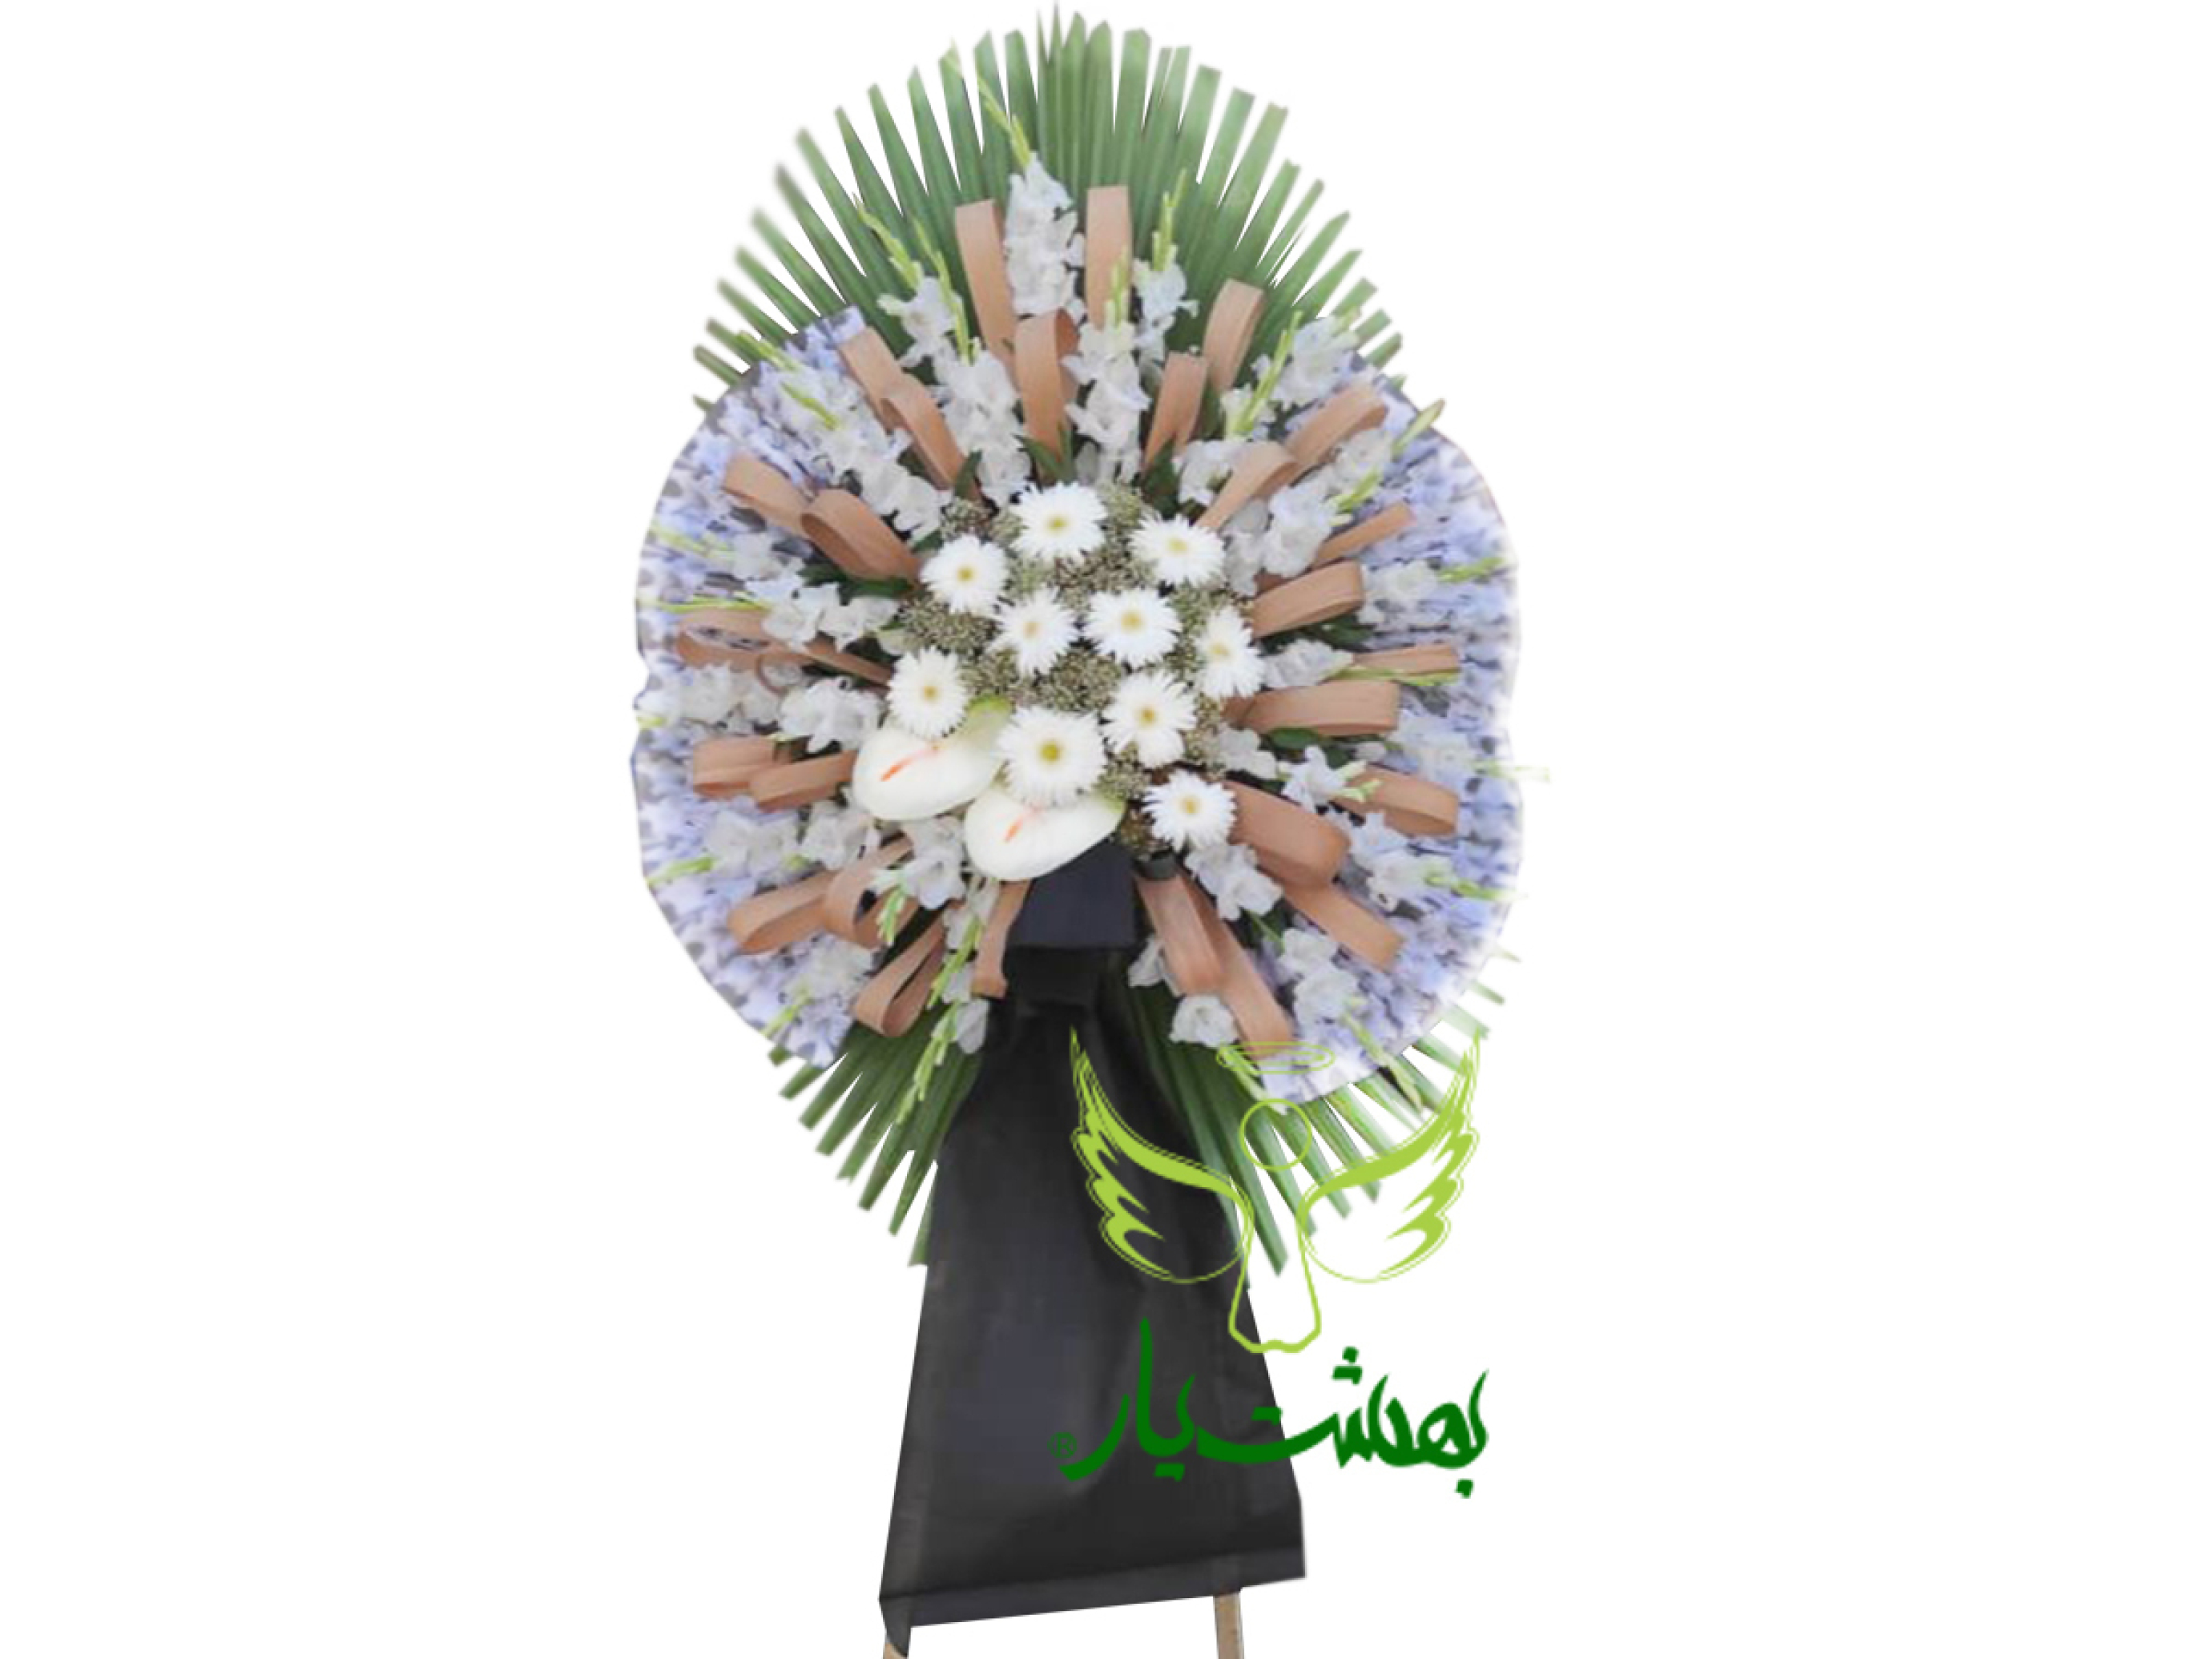  خرید تاج گل ارزان ختم با ارسال رایگان در بهشت یار 